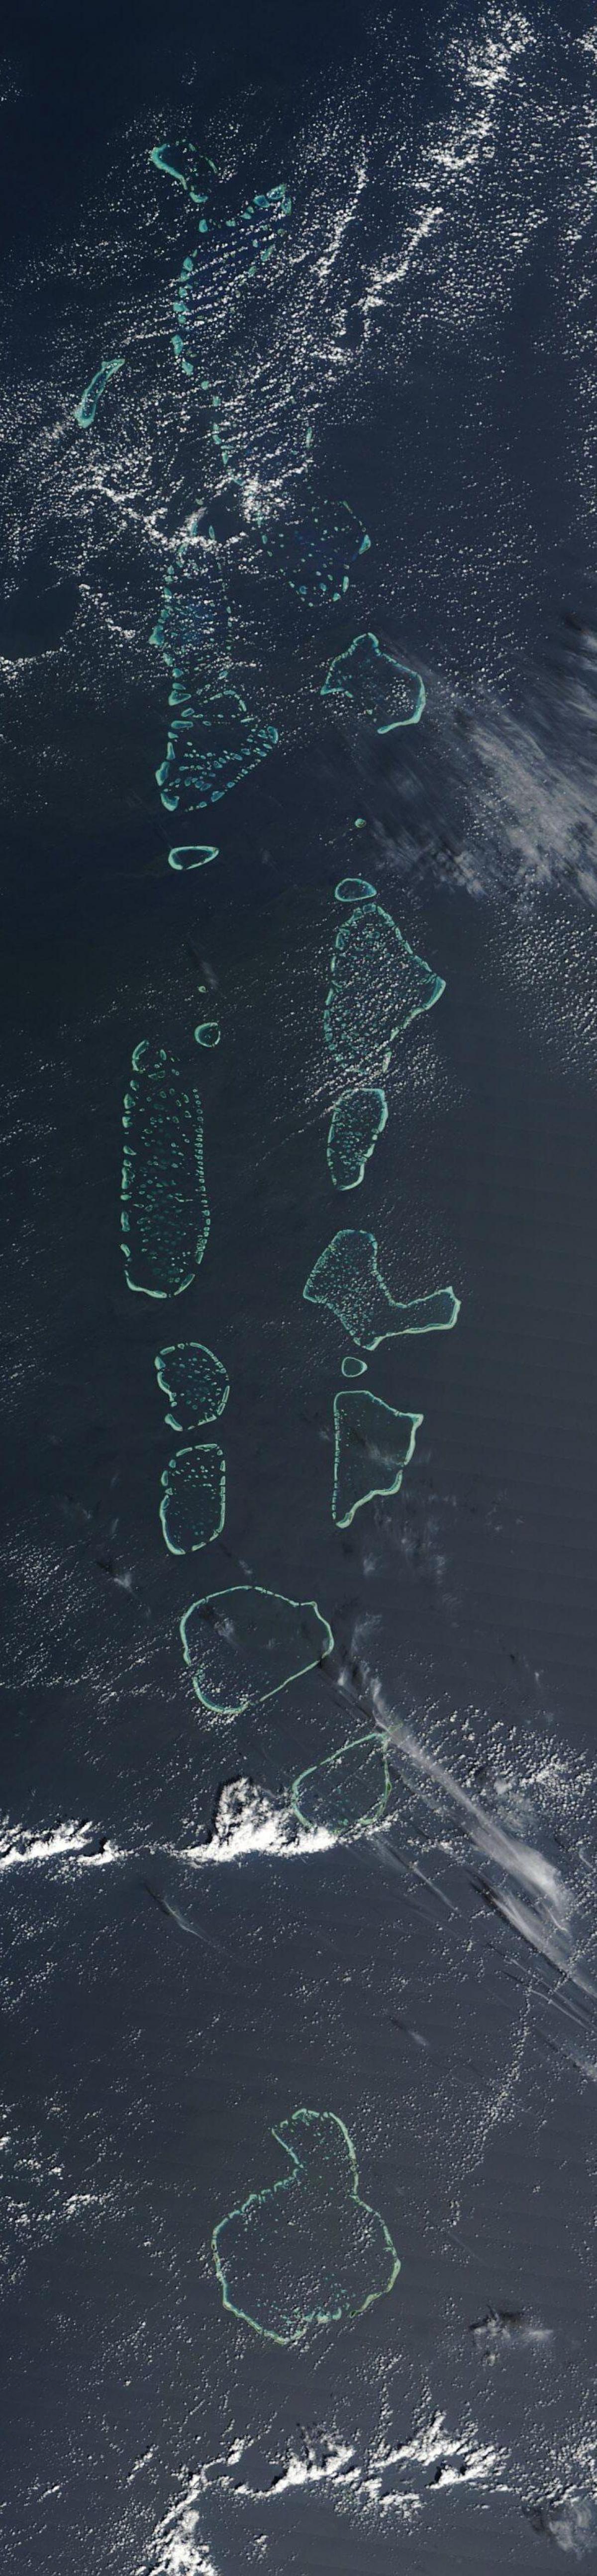 kaart van maldiven satelliet